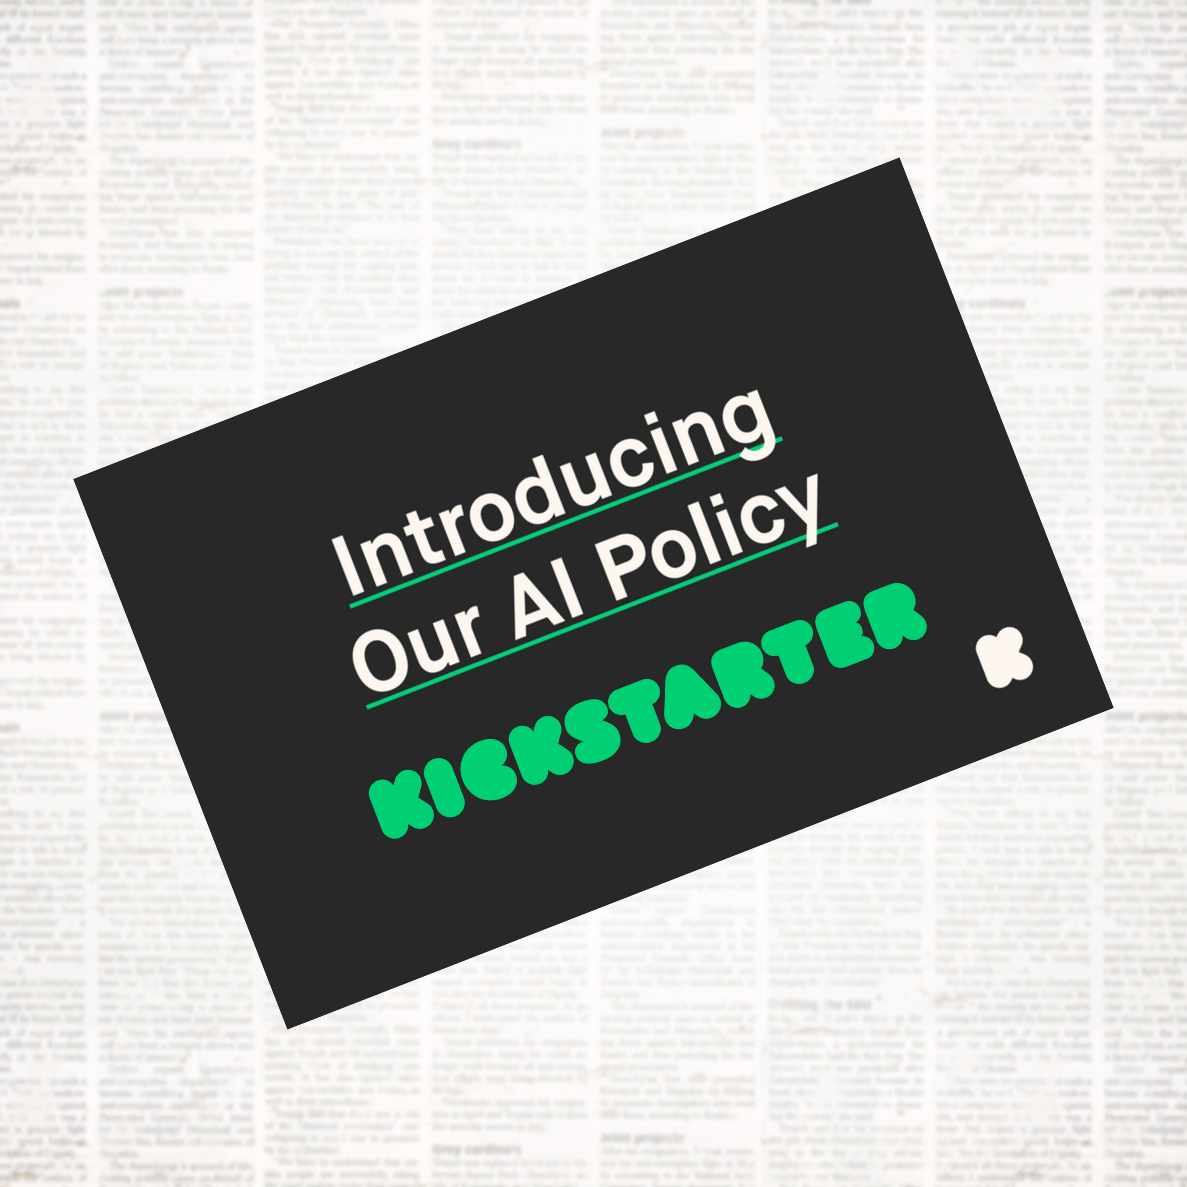 grafika informująca o zmianie polityki na platformie Kickstarter